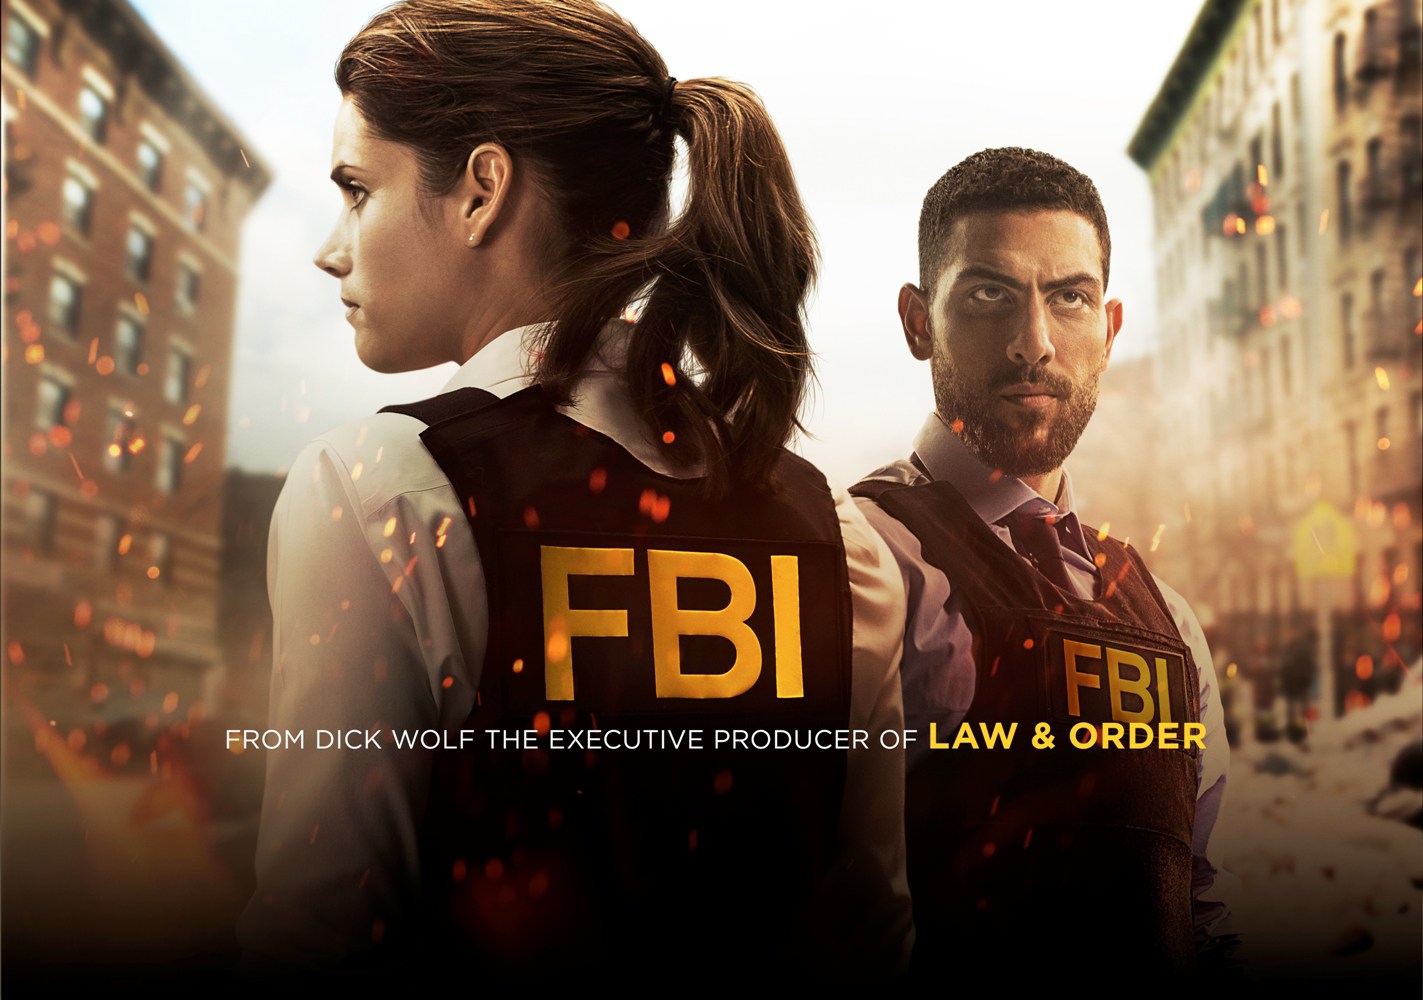 FBI Season 1